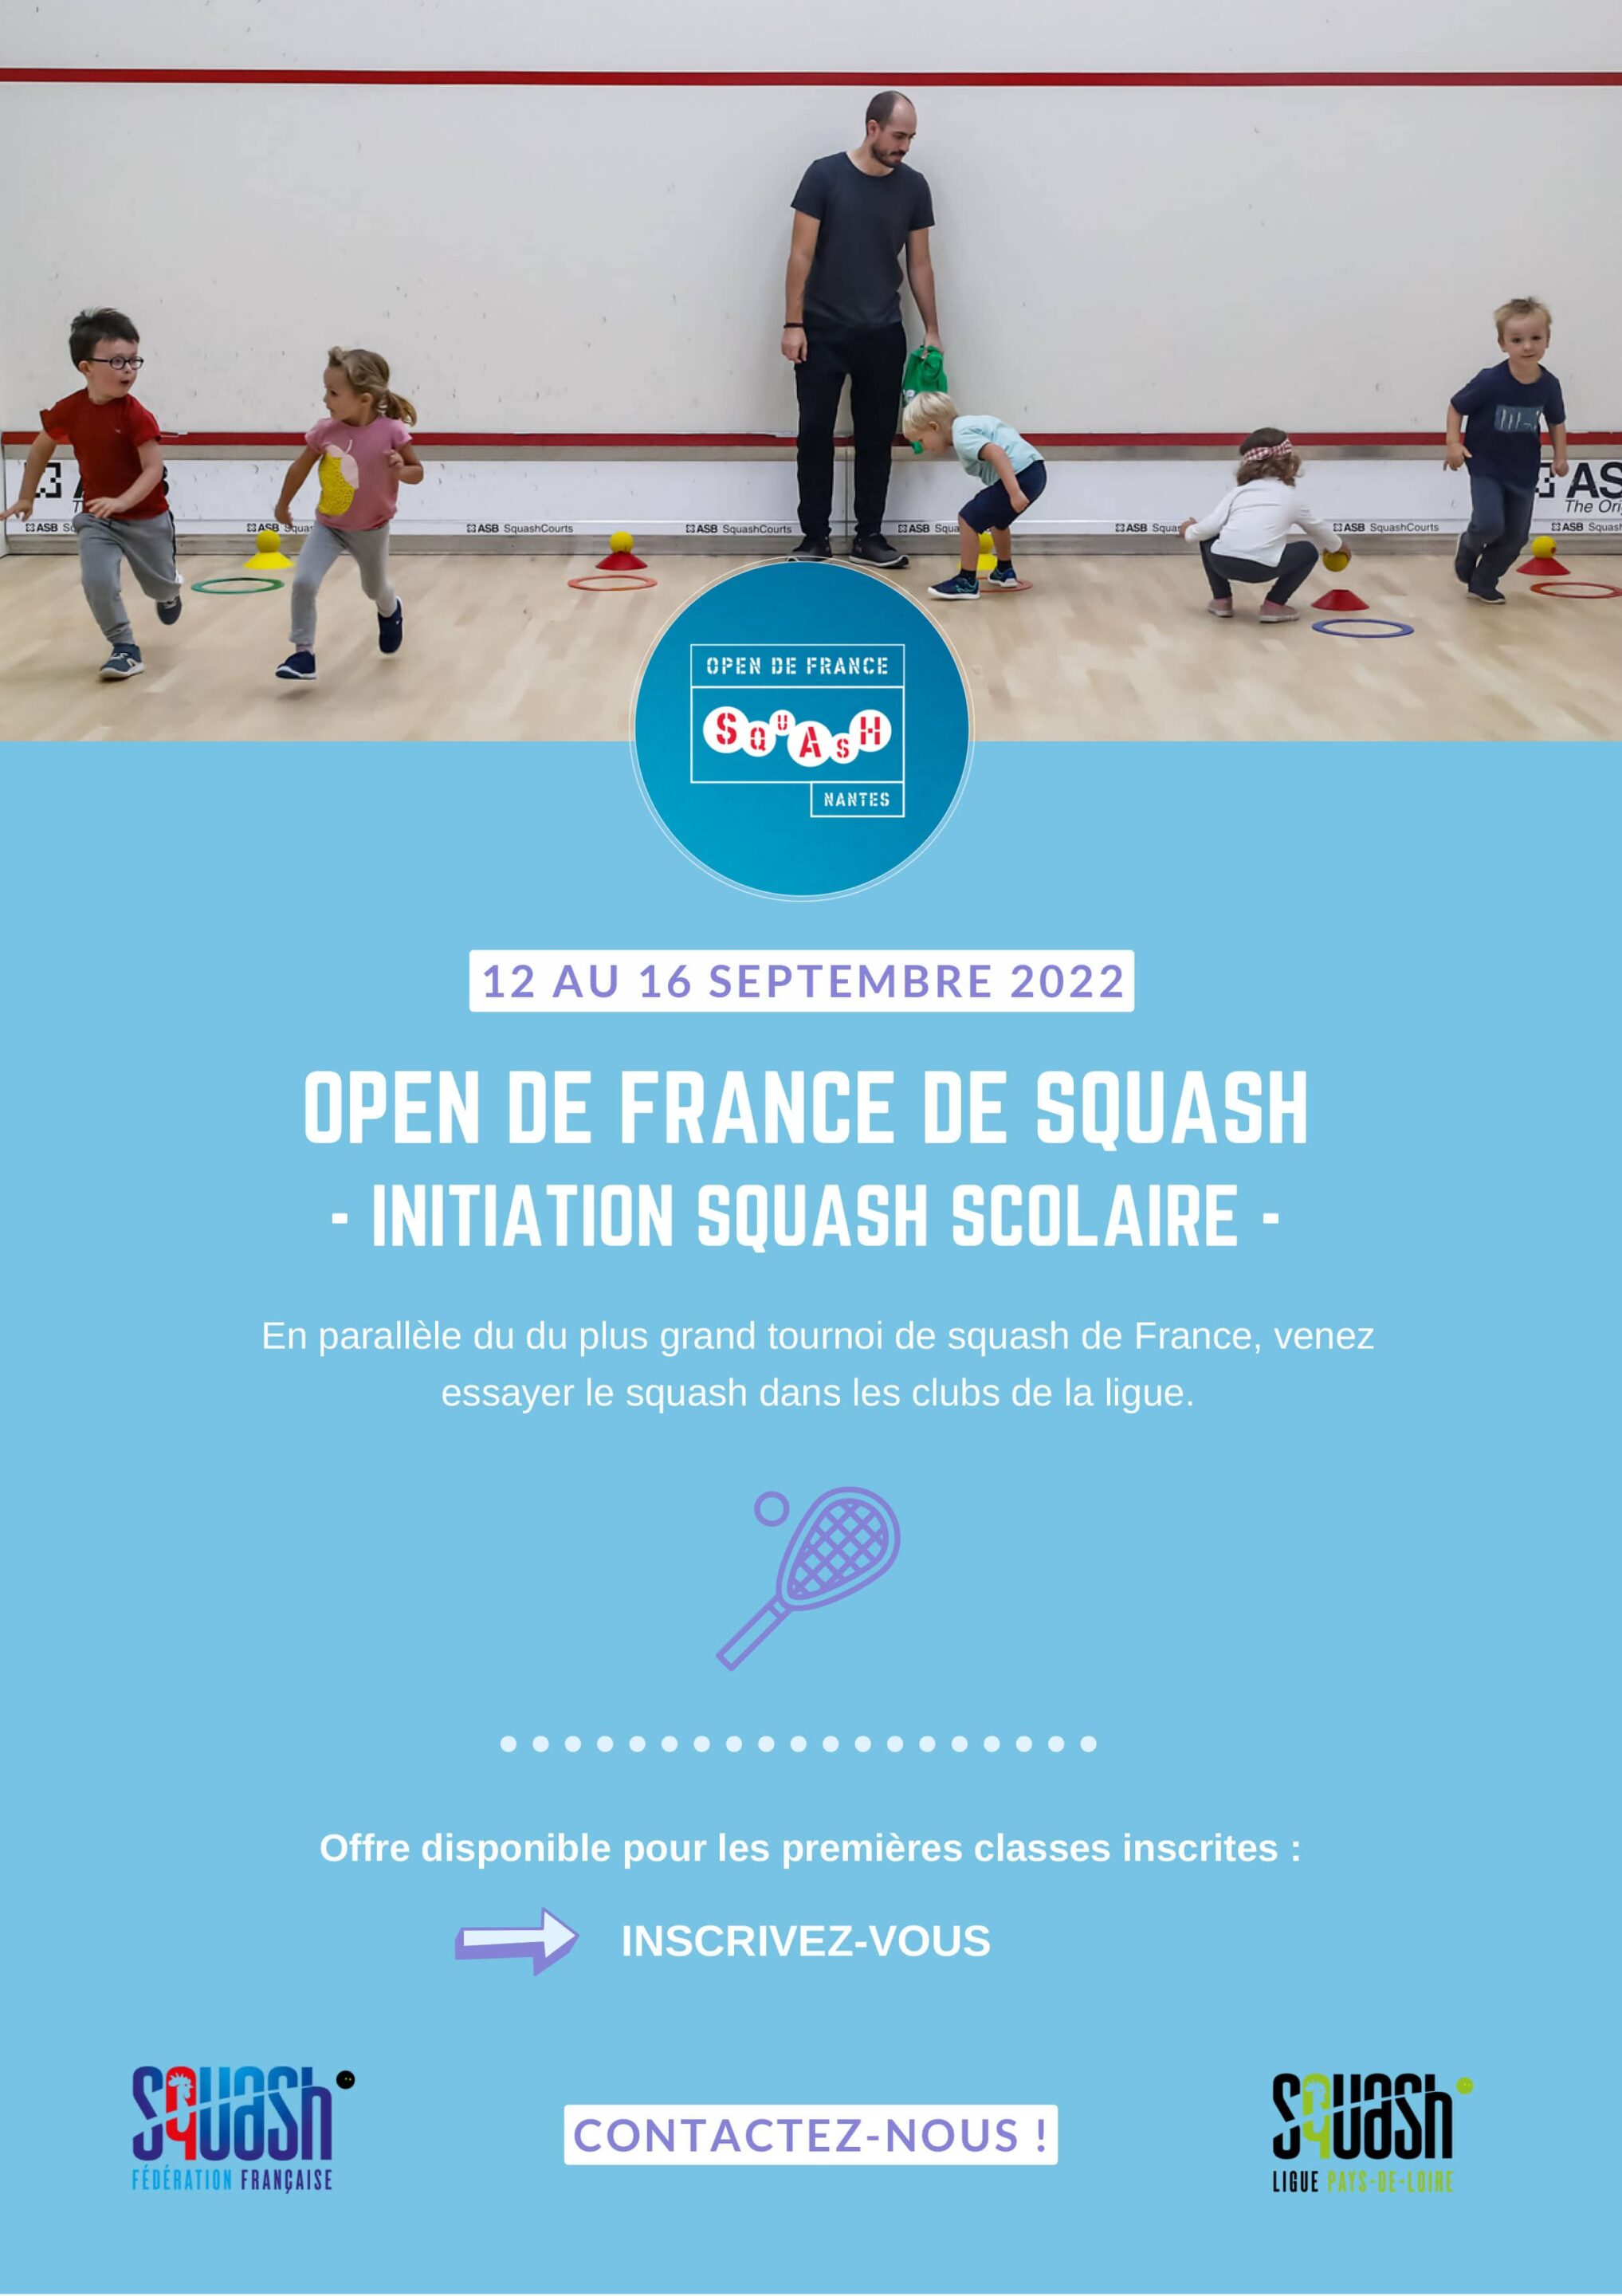 ligue_squash_pdl_initiation_scolaire_open_de_france_2022